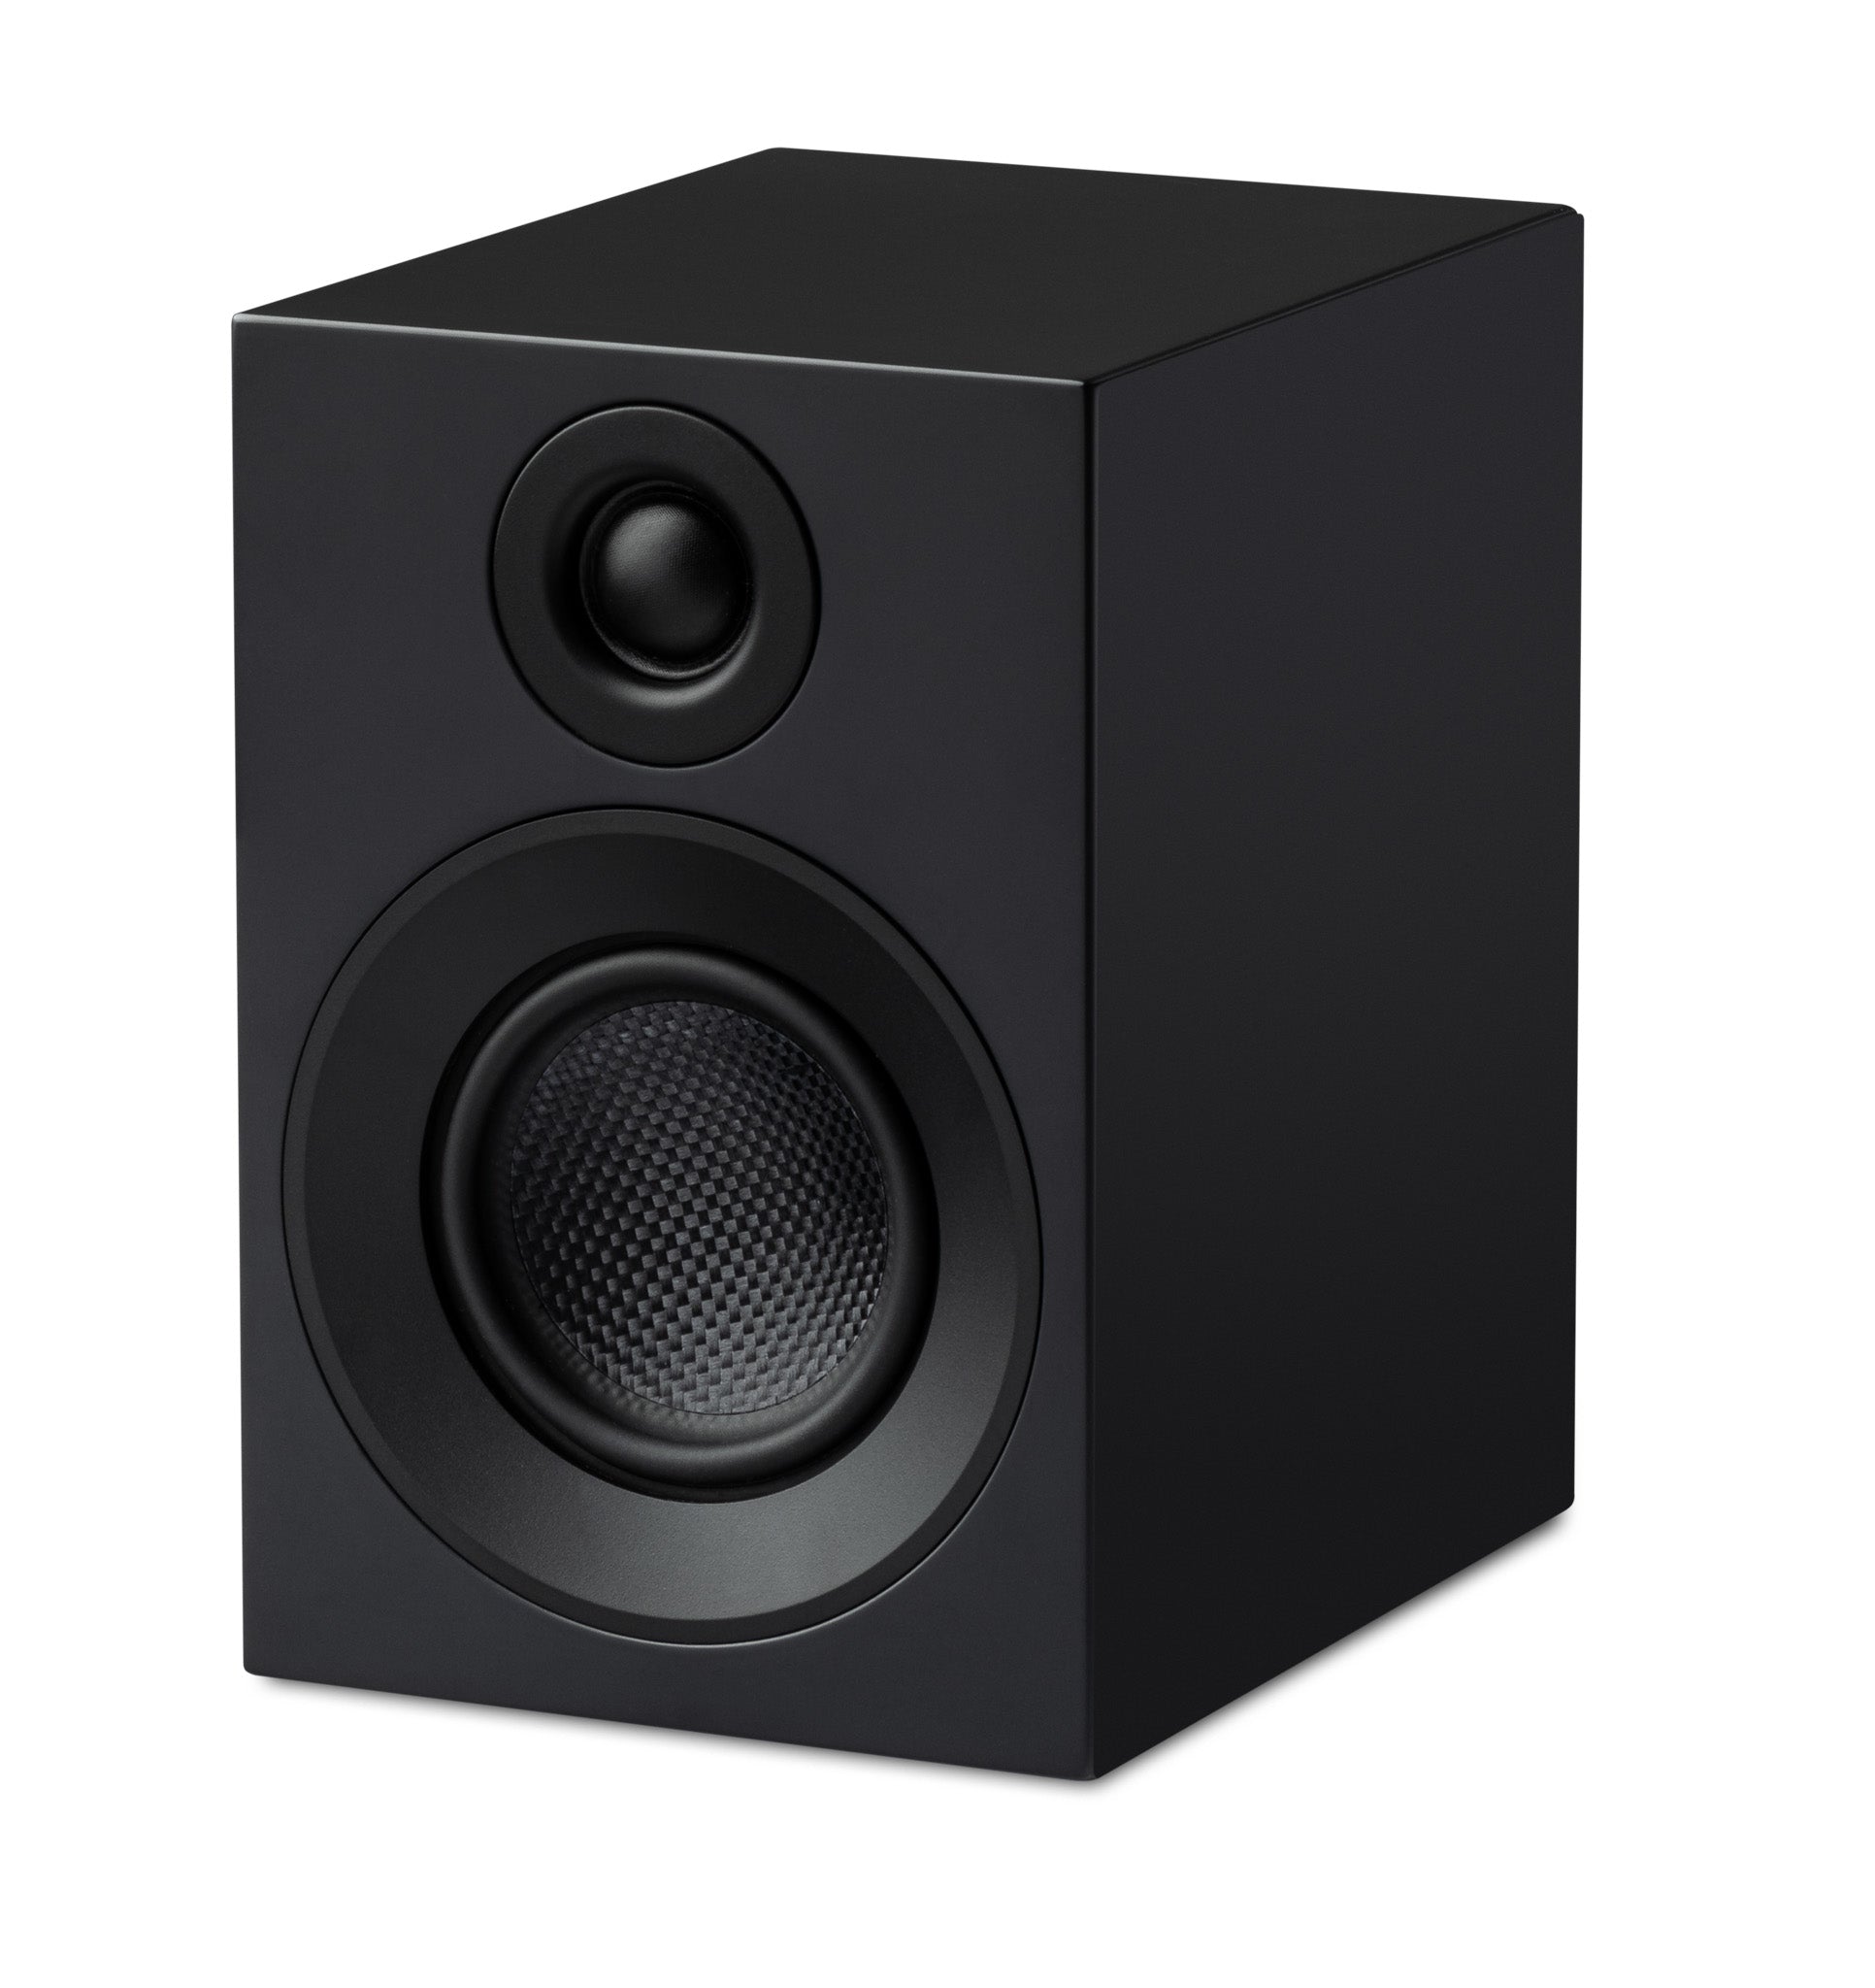 Pro-Ject Speaker Box 3E Carbon kaiutinpari